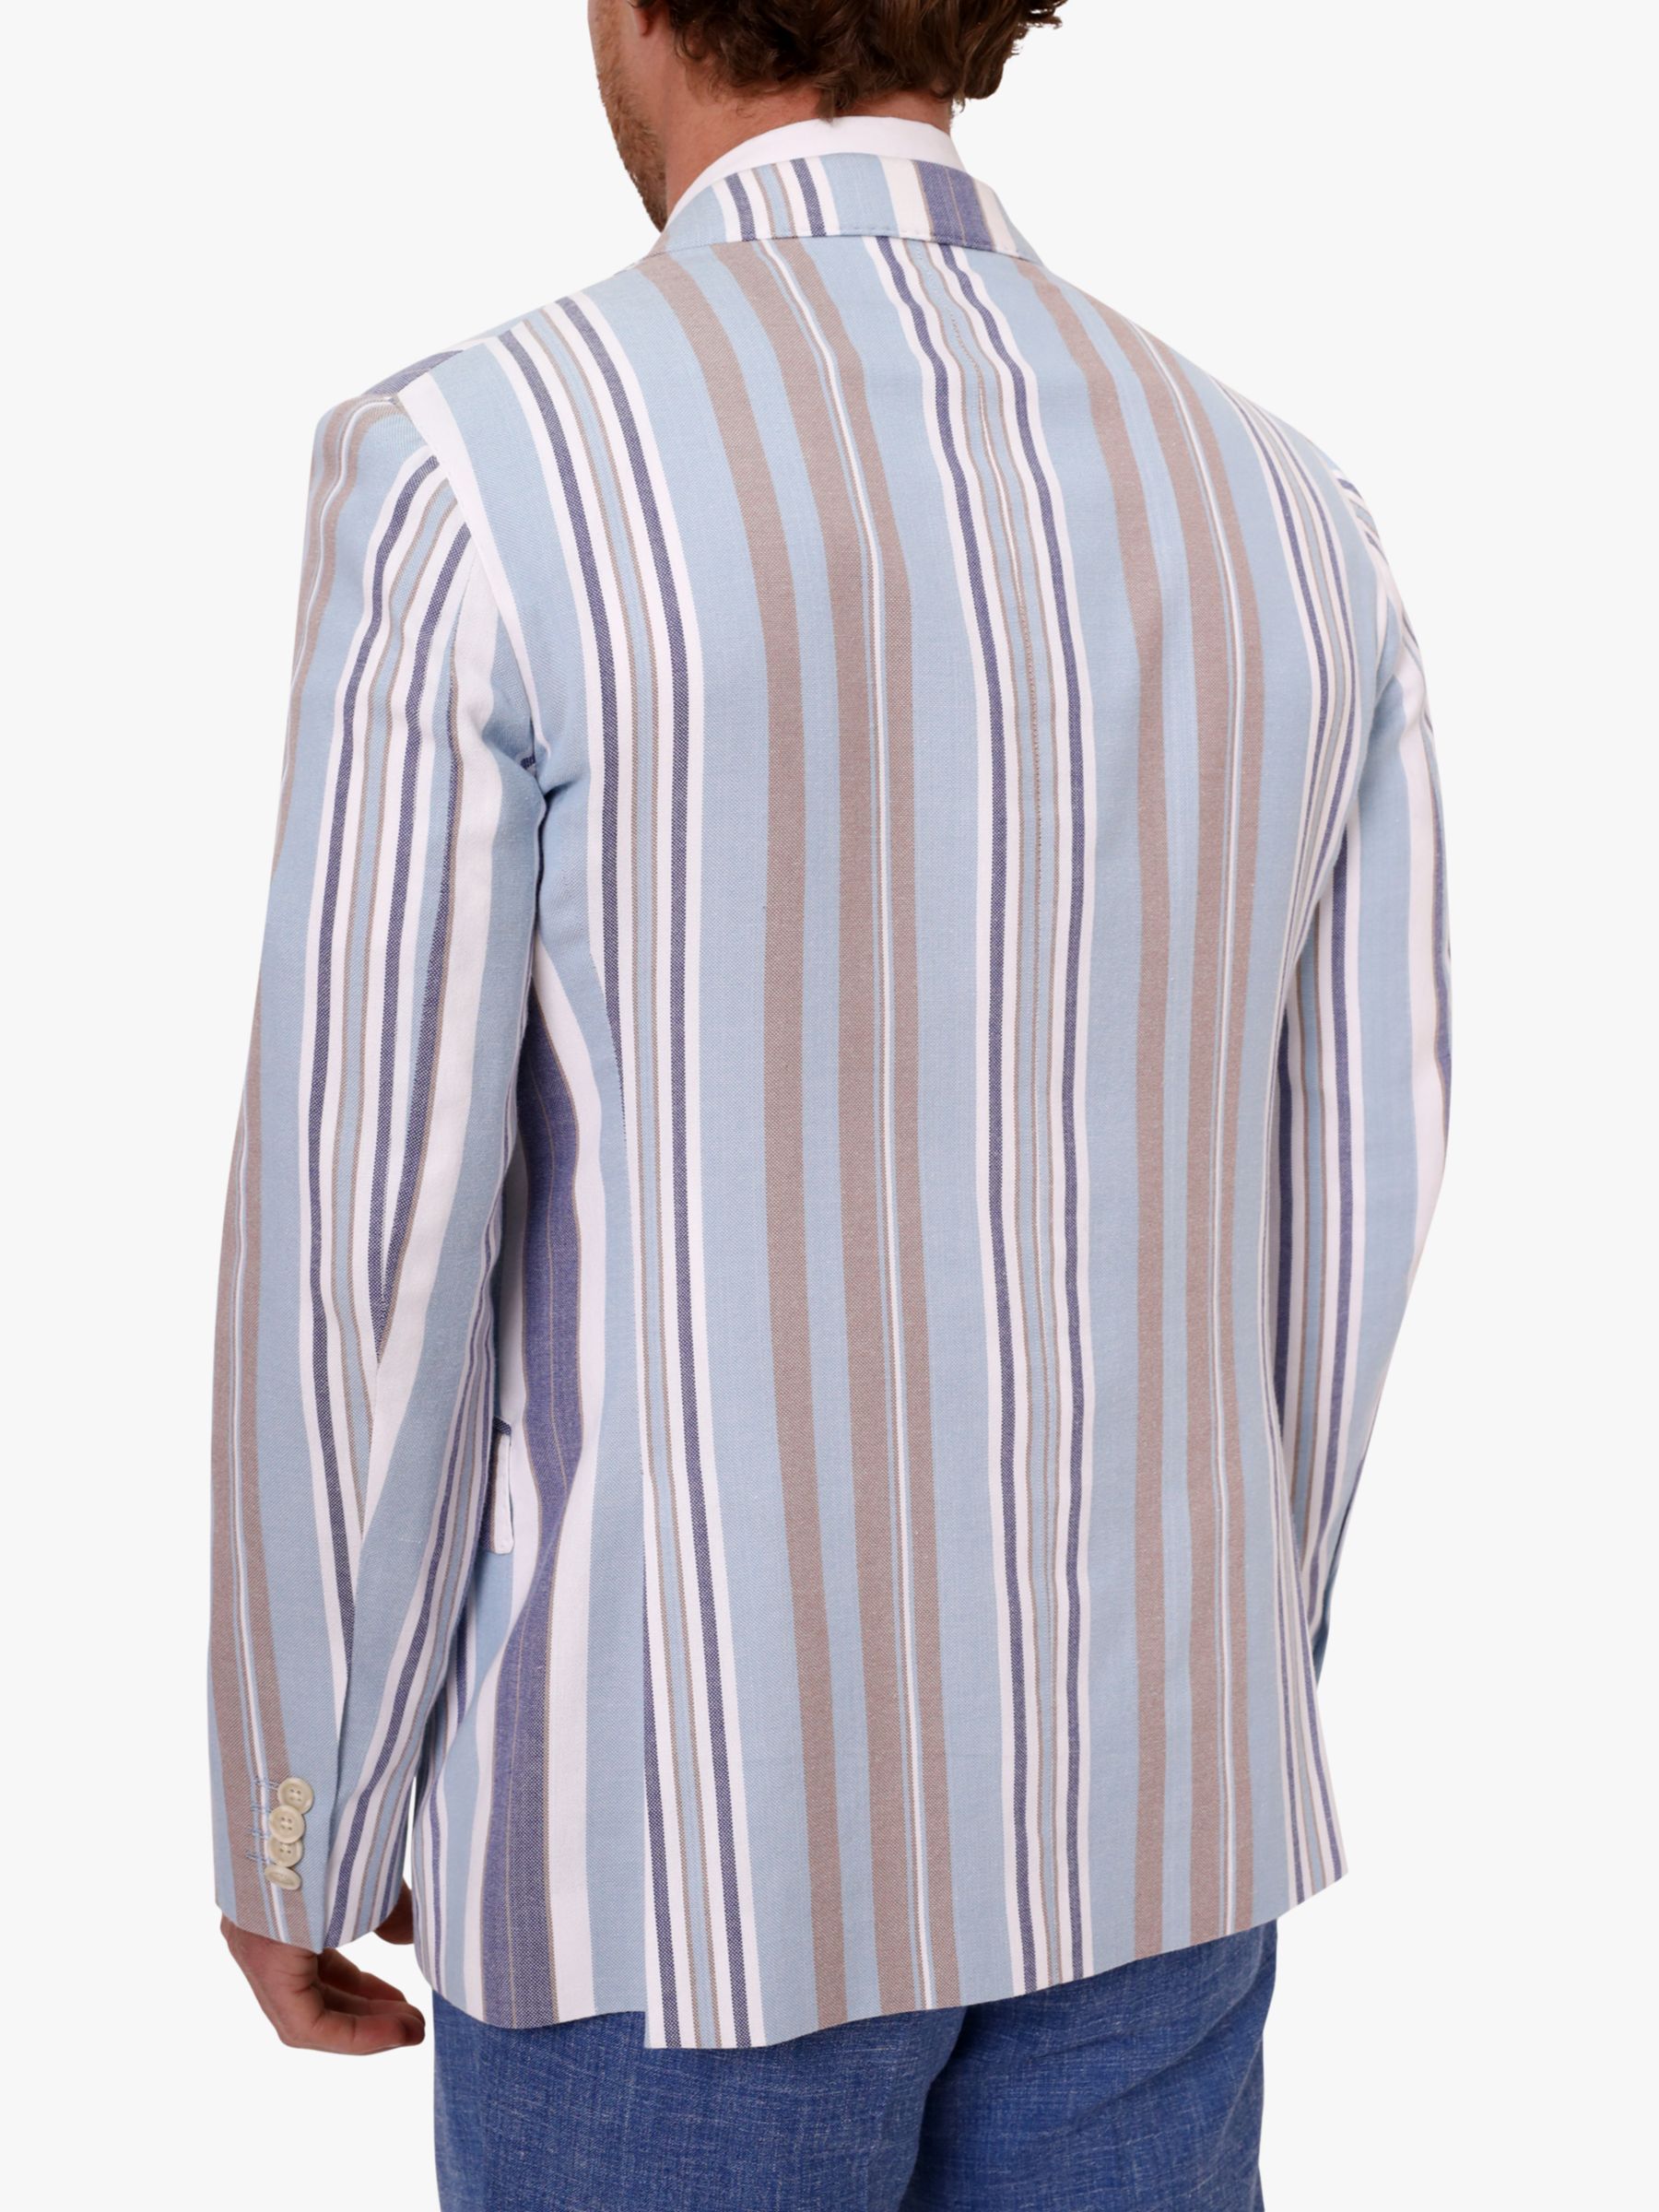 Buy KOY Stripe Cotton Blazer, Blue/Beige Online at johnlewis.com